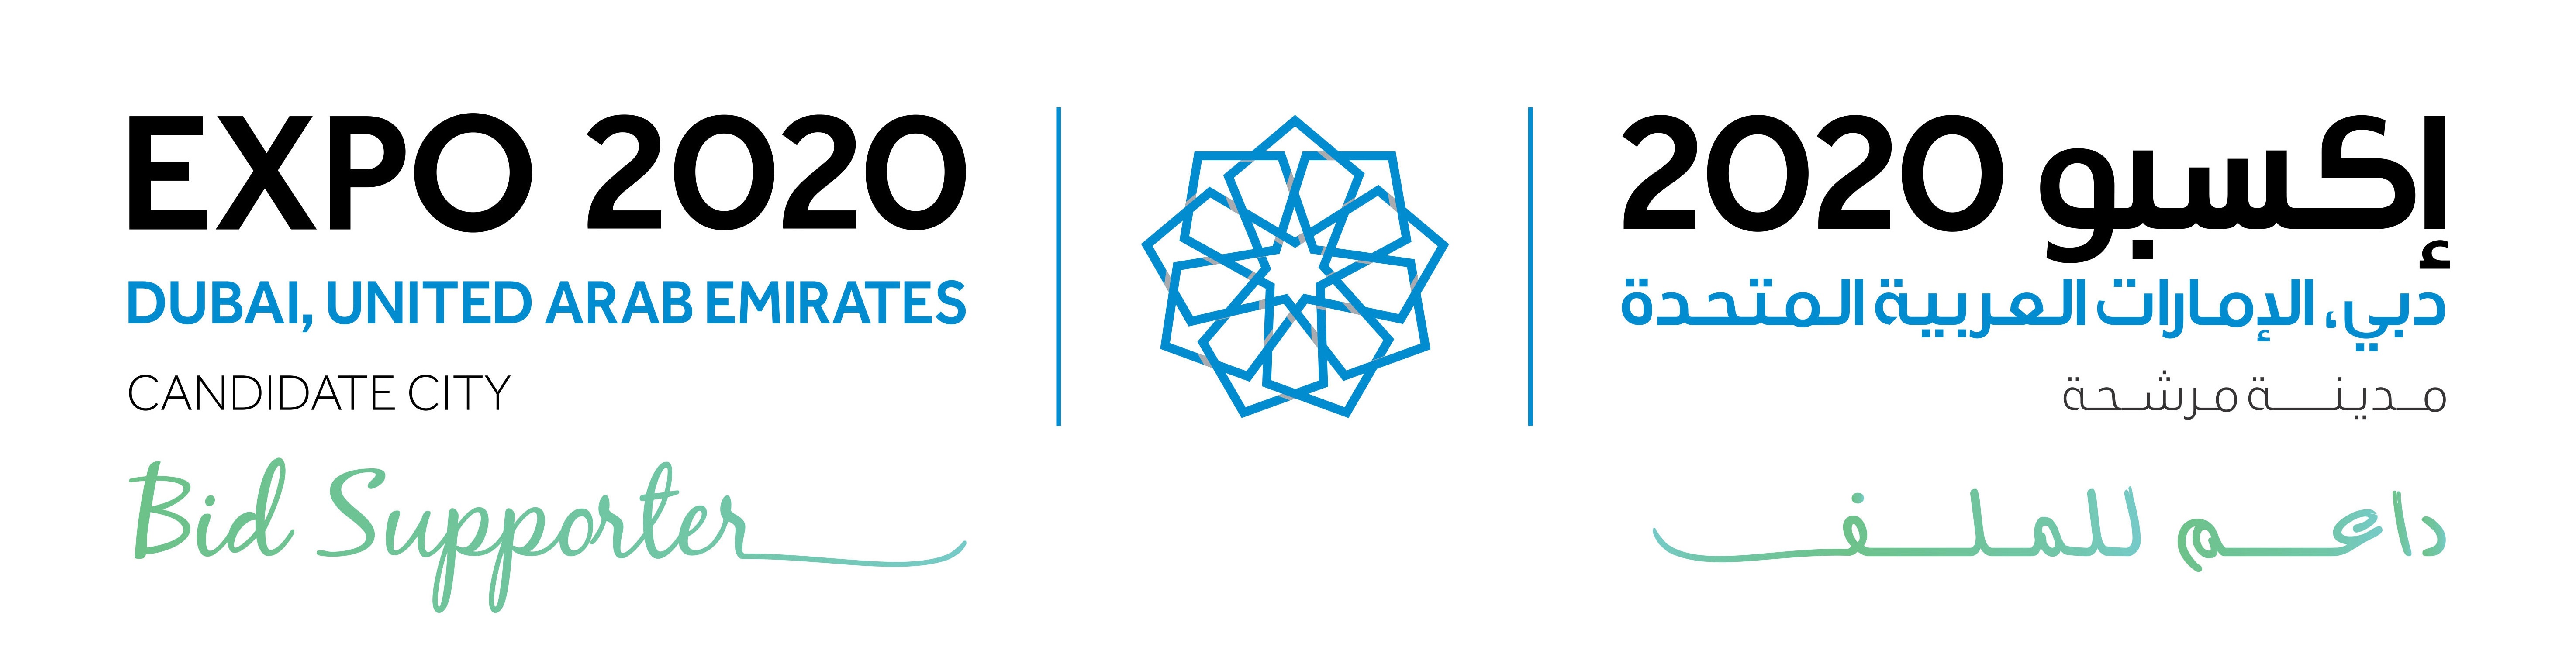 Money Expo Dubai Logo photo - 1